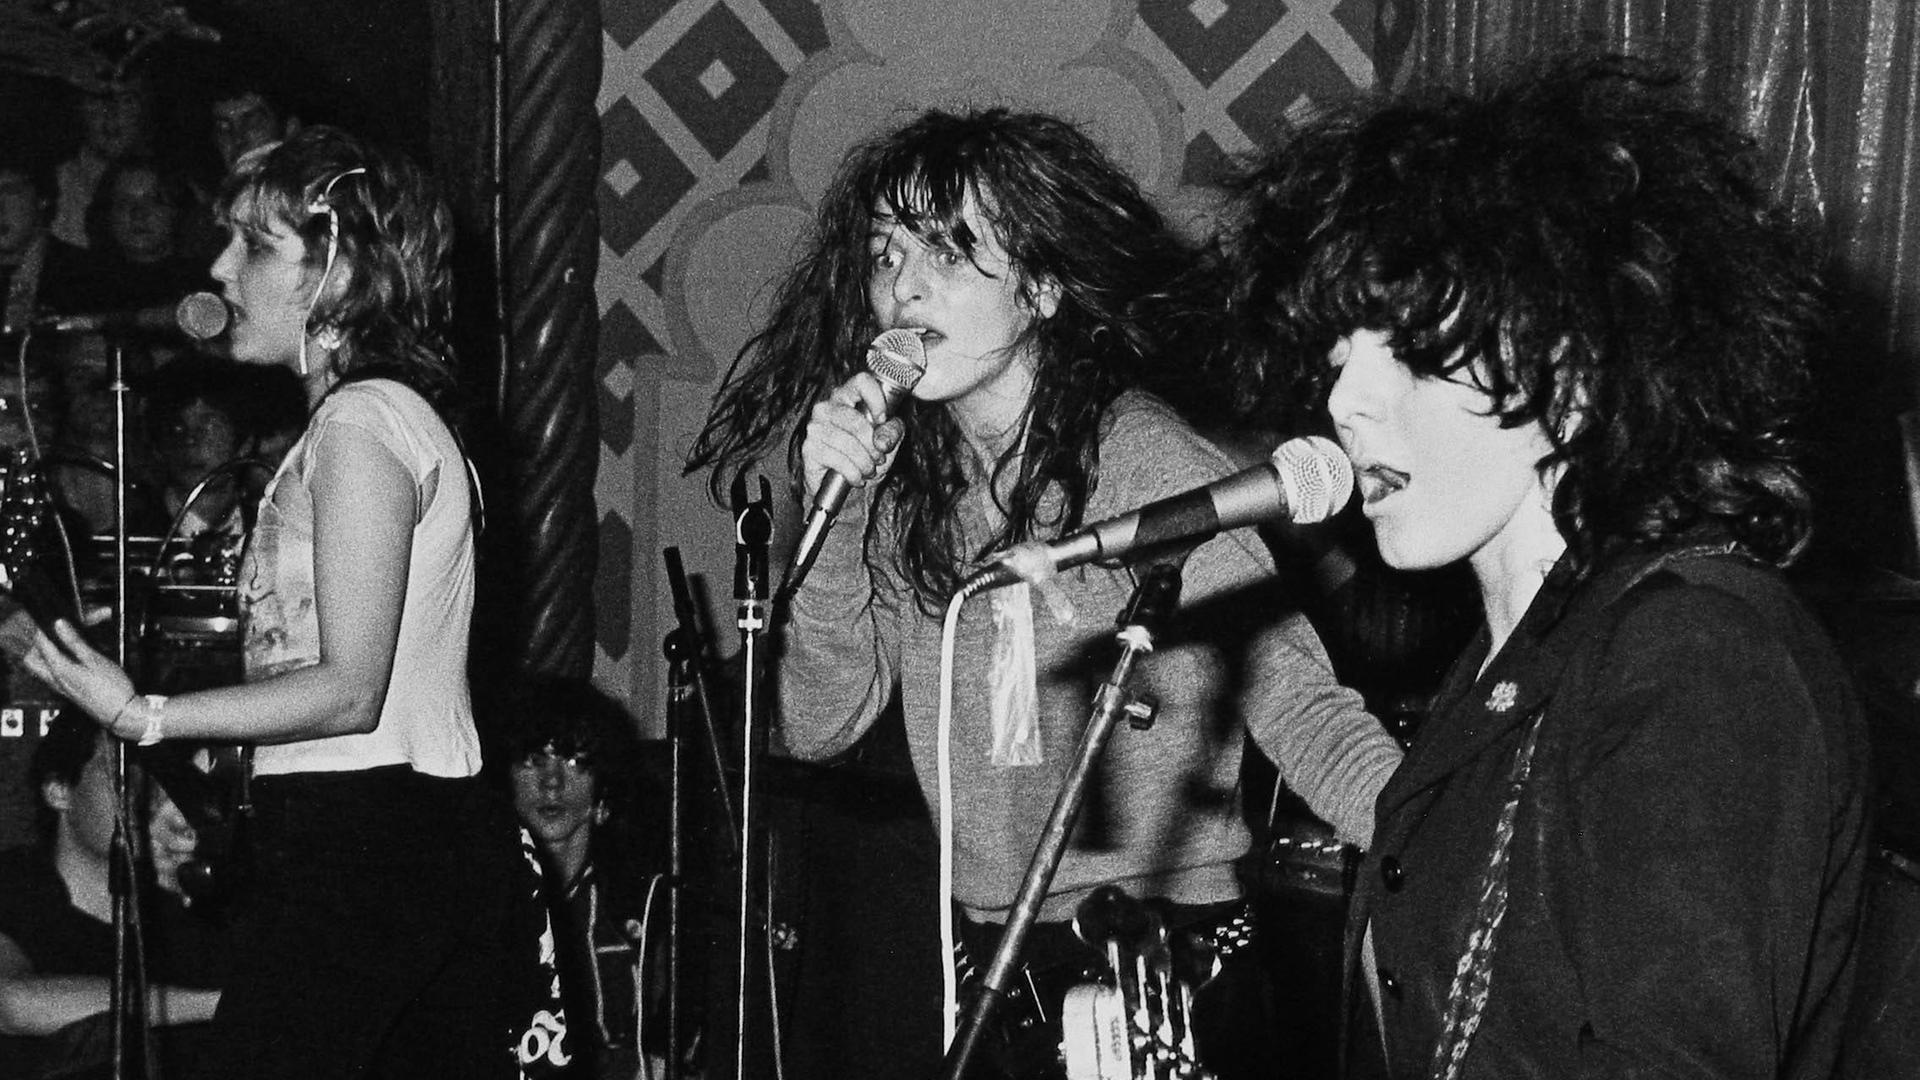 Ein Schwarz-Weiß-Foto zeigt Viv Albertine, Ariane Foster und Tessa Pollitt von der Band The Slits bei einem Auftritt im Mai 1979
